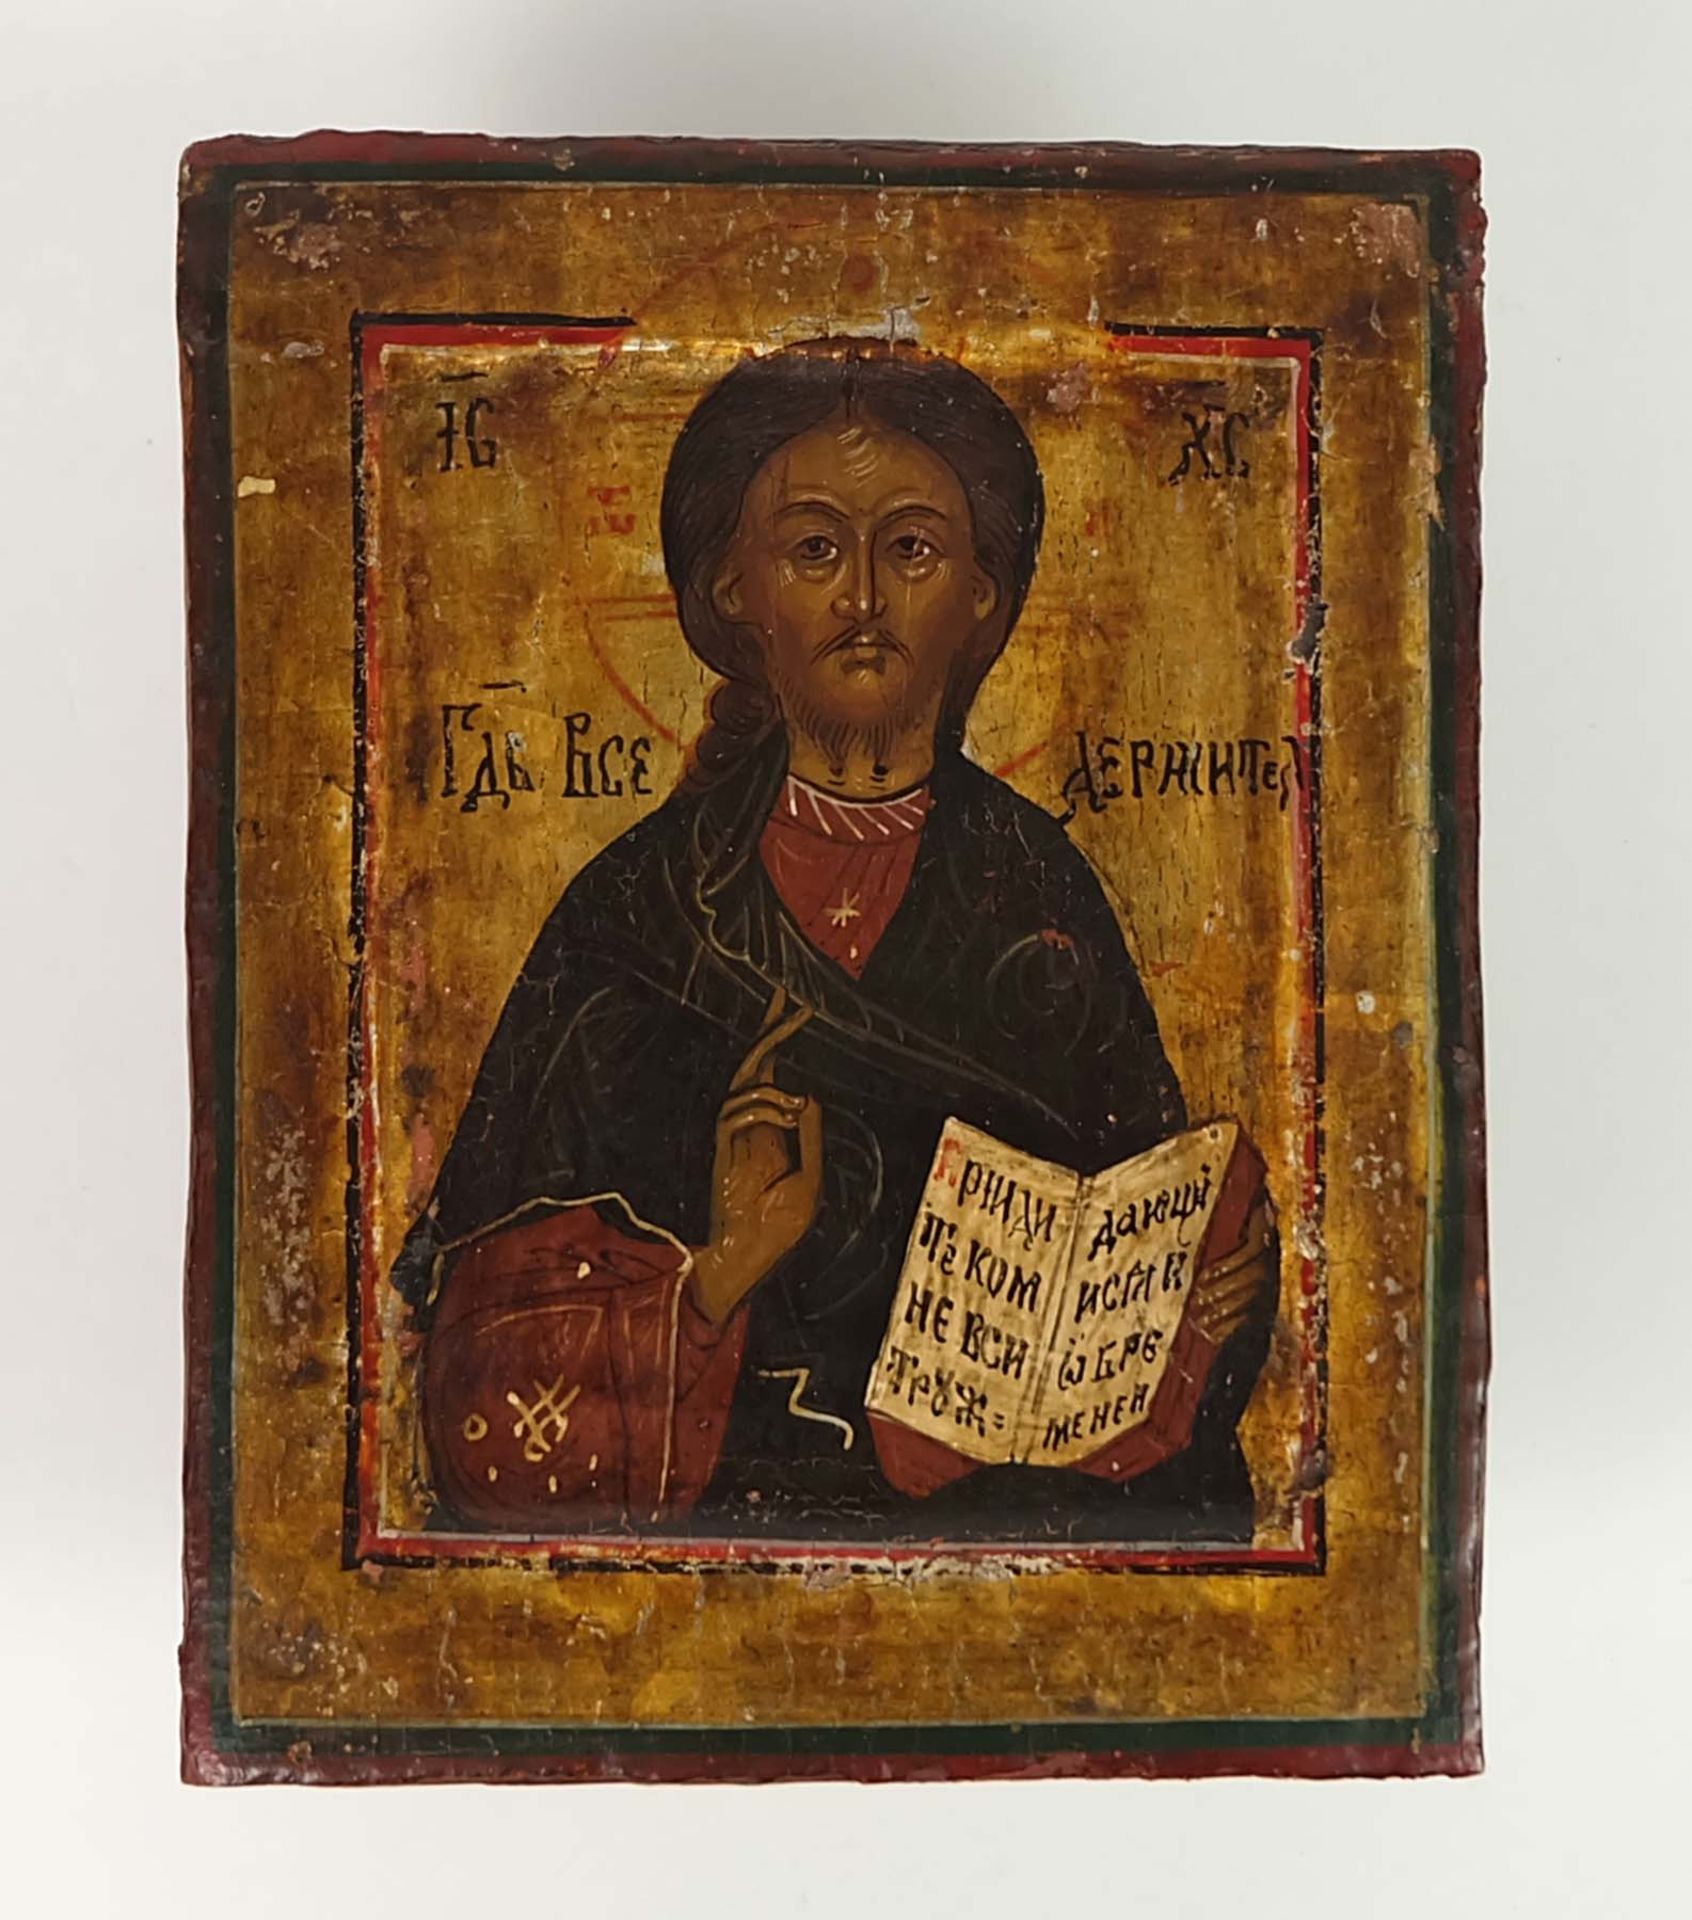 IKONE, Rußland, 19.Jh., Christus Pantokrator, 13,1 x 10,4 cm, (Ex-Coll. einer überregional bekannten